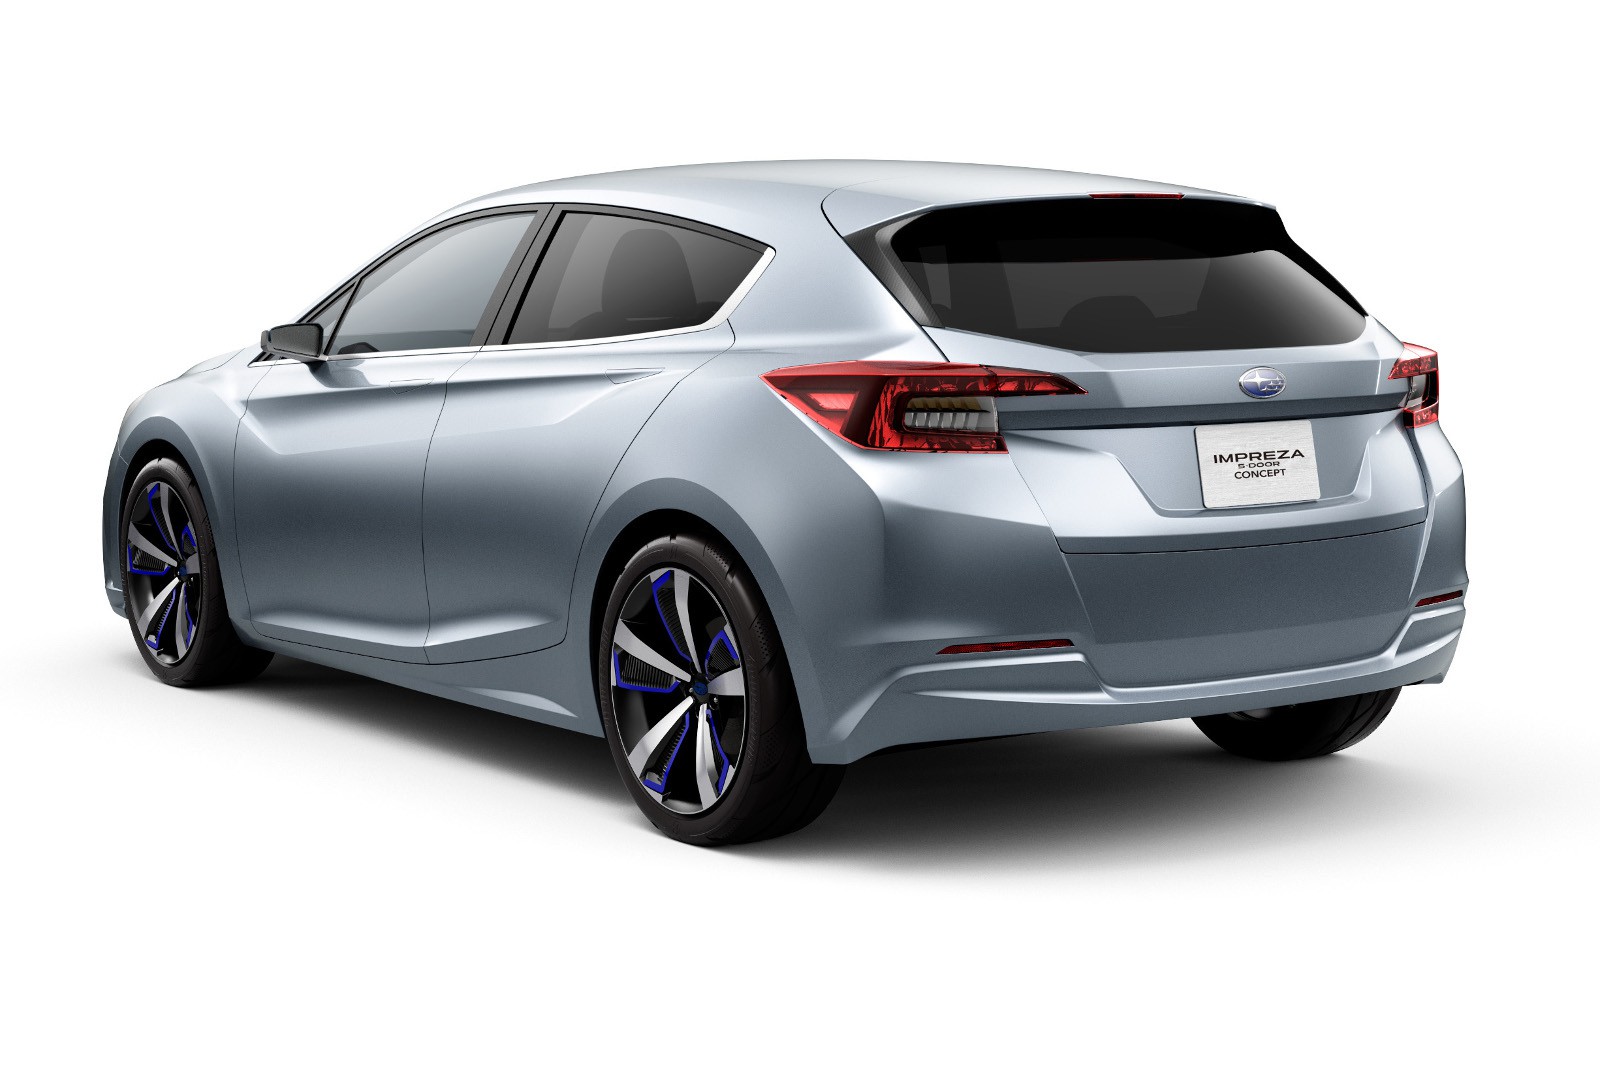 Subaru Impreza 5-Door Concept, anticipando la llegada del nuevo modelo